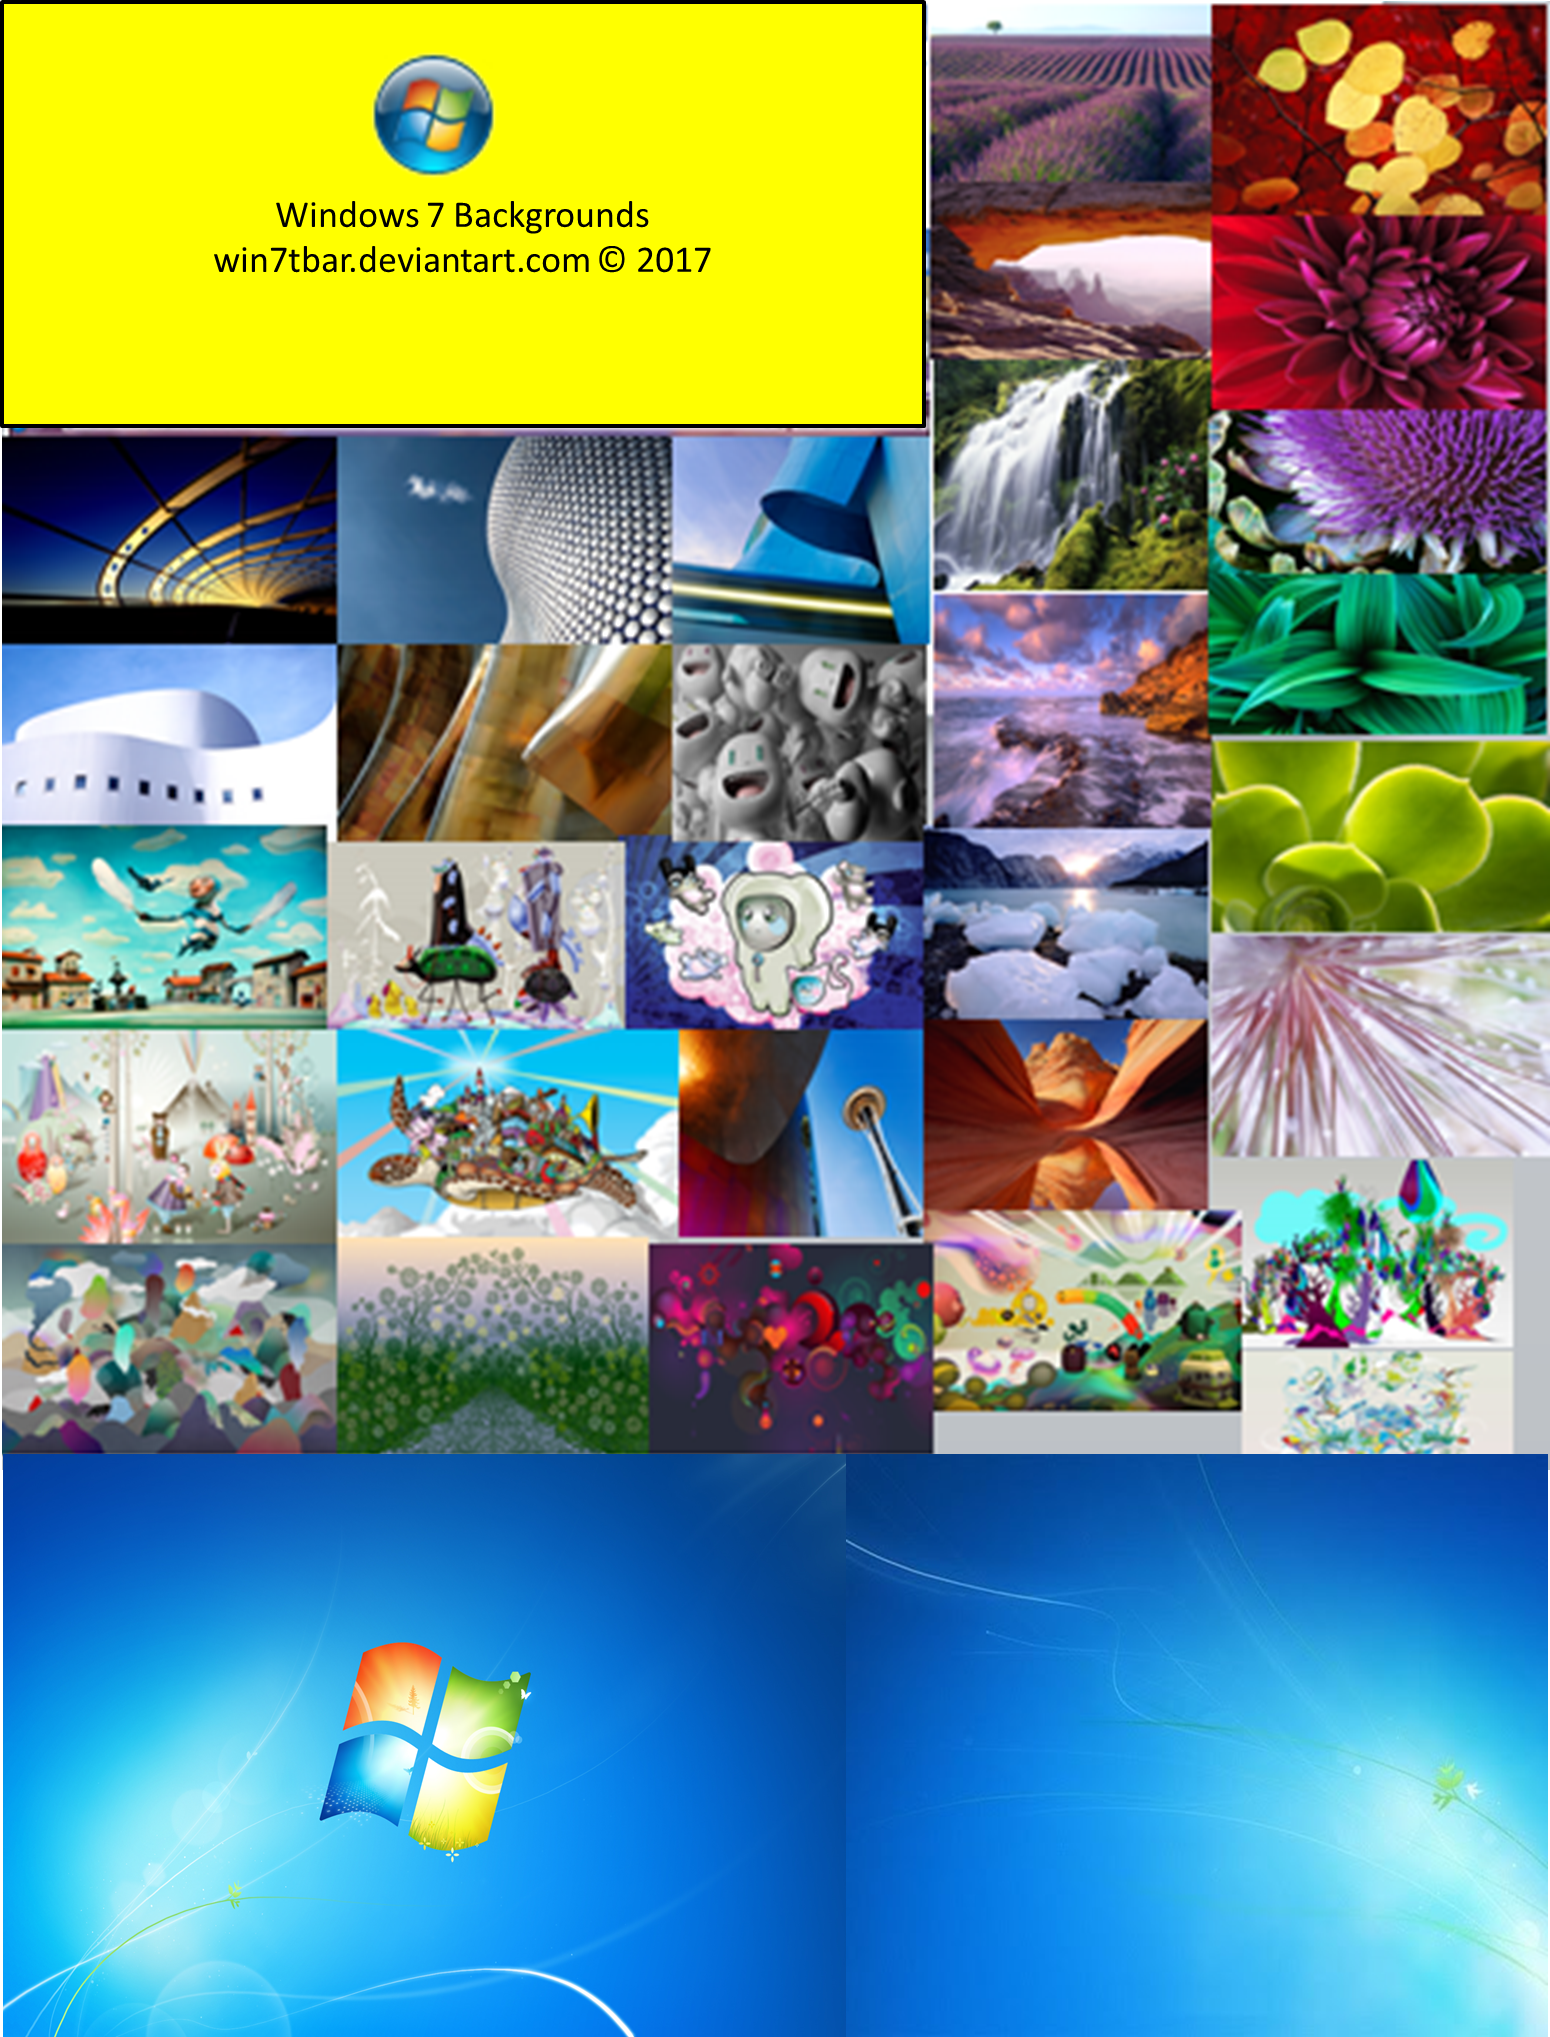 Windows 7 Backgrounds: Hình nền Windows 7 rất đa dạng và đẹp mắt, từ cảnh đồi núi, hàng rào đến những bức tranh nghệ thuật đầy màu sắc. Hãy thưởng thức những hình nền tuyệt vời này để tạo cho màn hình desktop của bạn một diện mạo mới và độc đáo. 